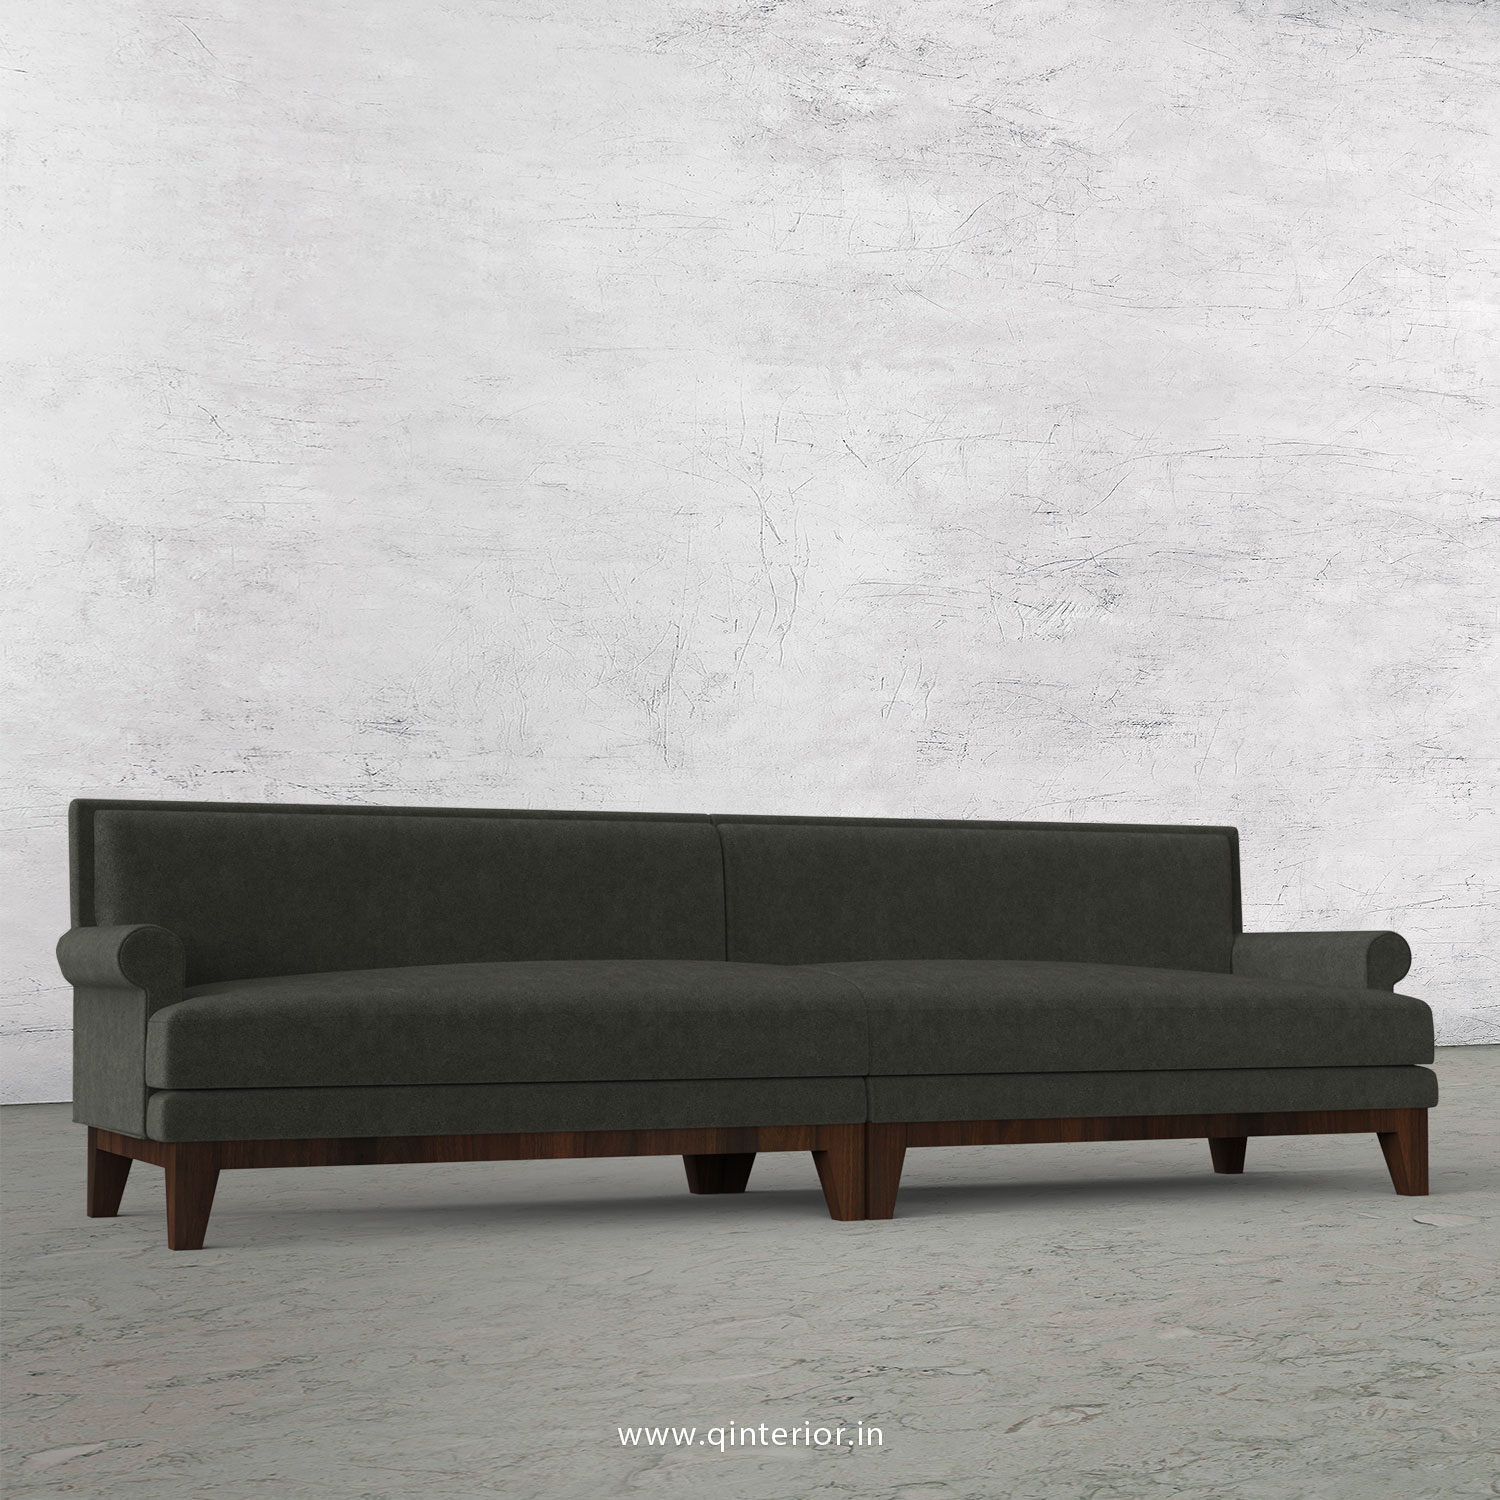 Aviana 4 Seater Sofa in Velvet Fabric - SFA001 VL15